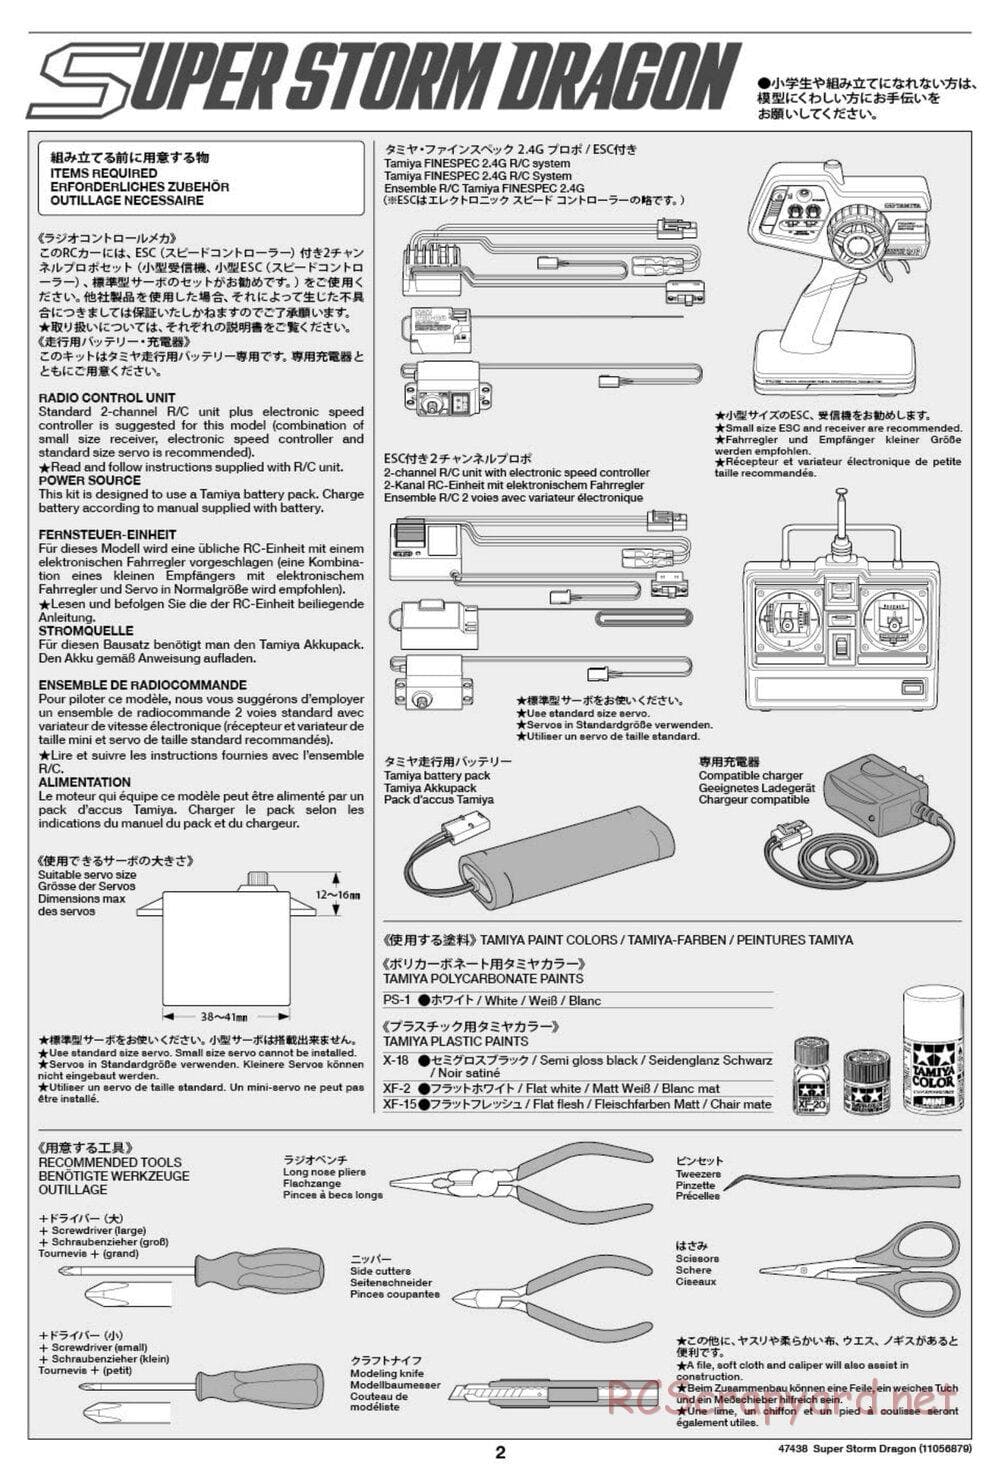 Tamiya - Super Storm Dragon Chassis - Manual - Page 2